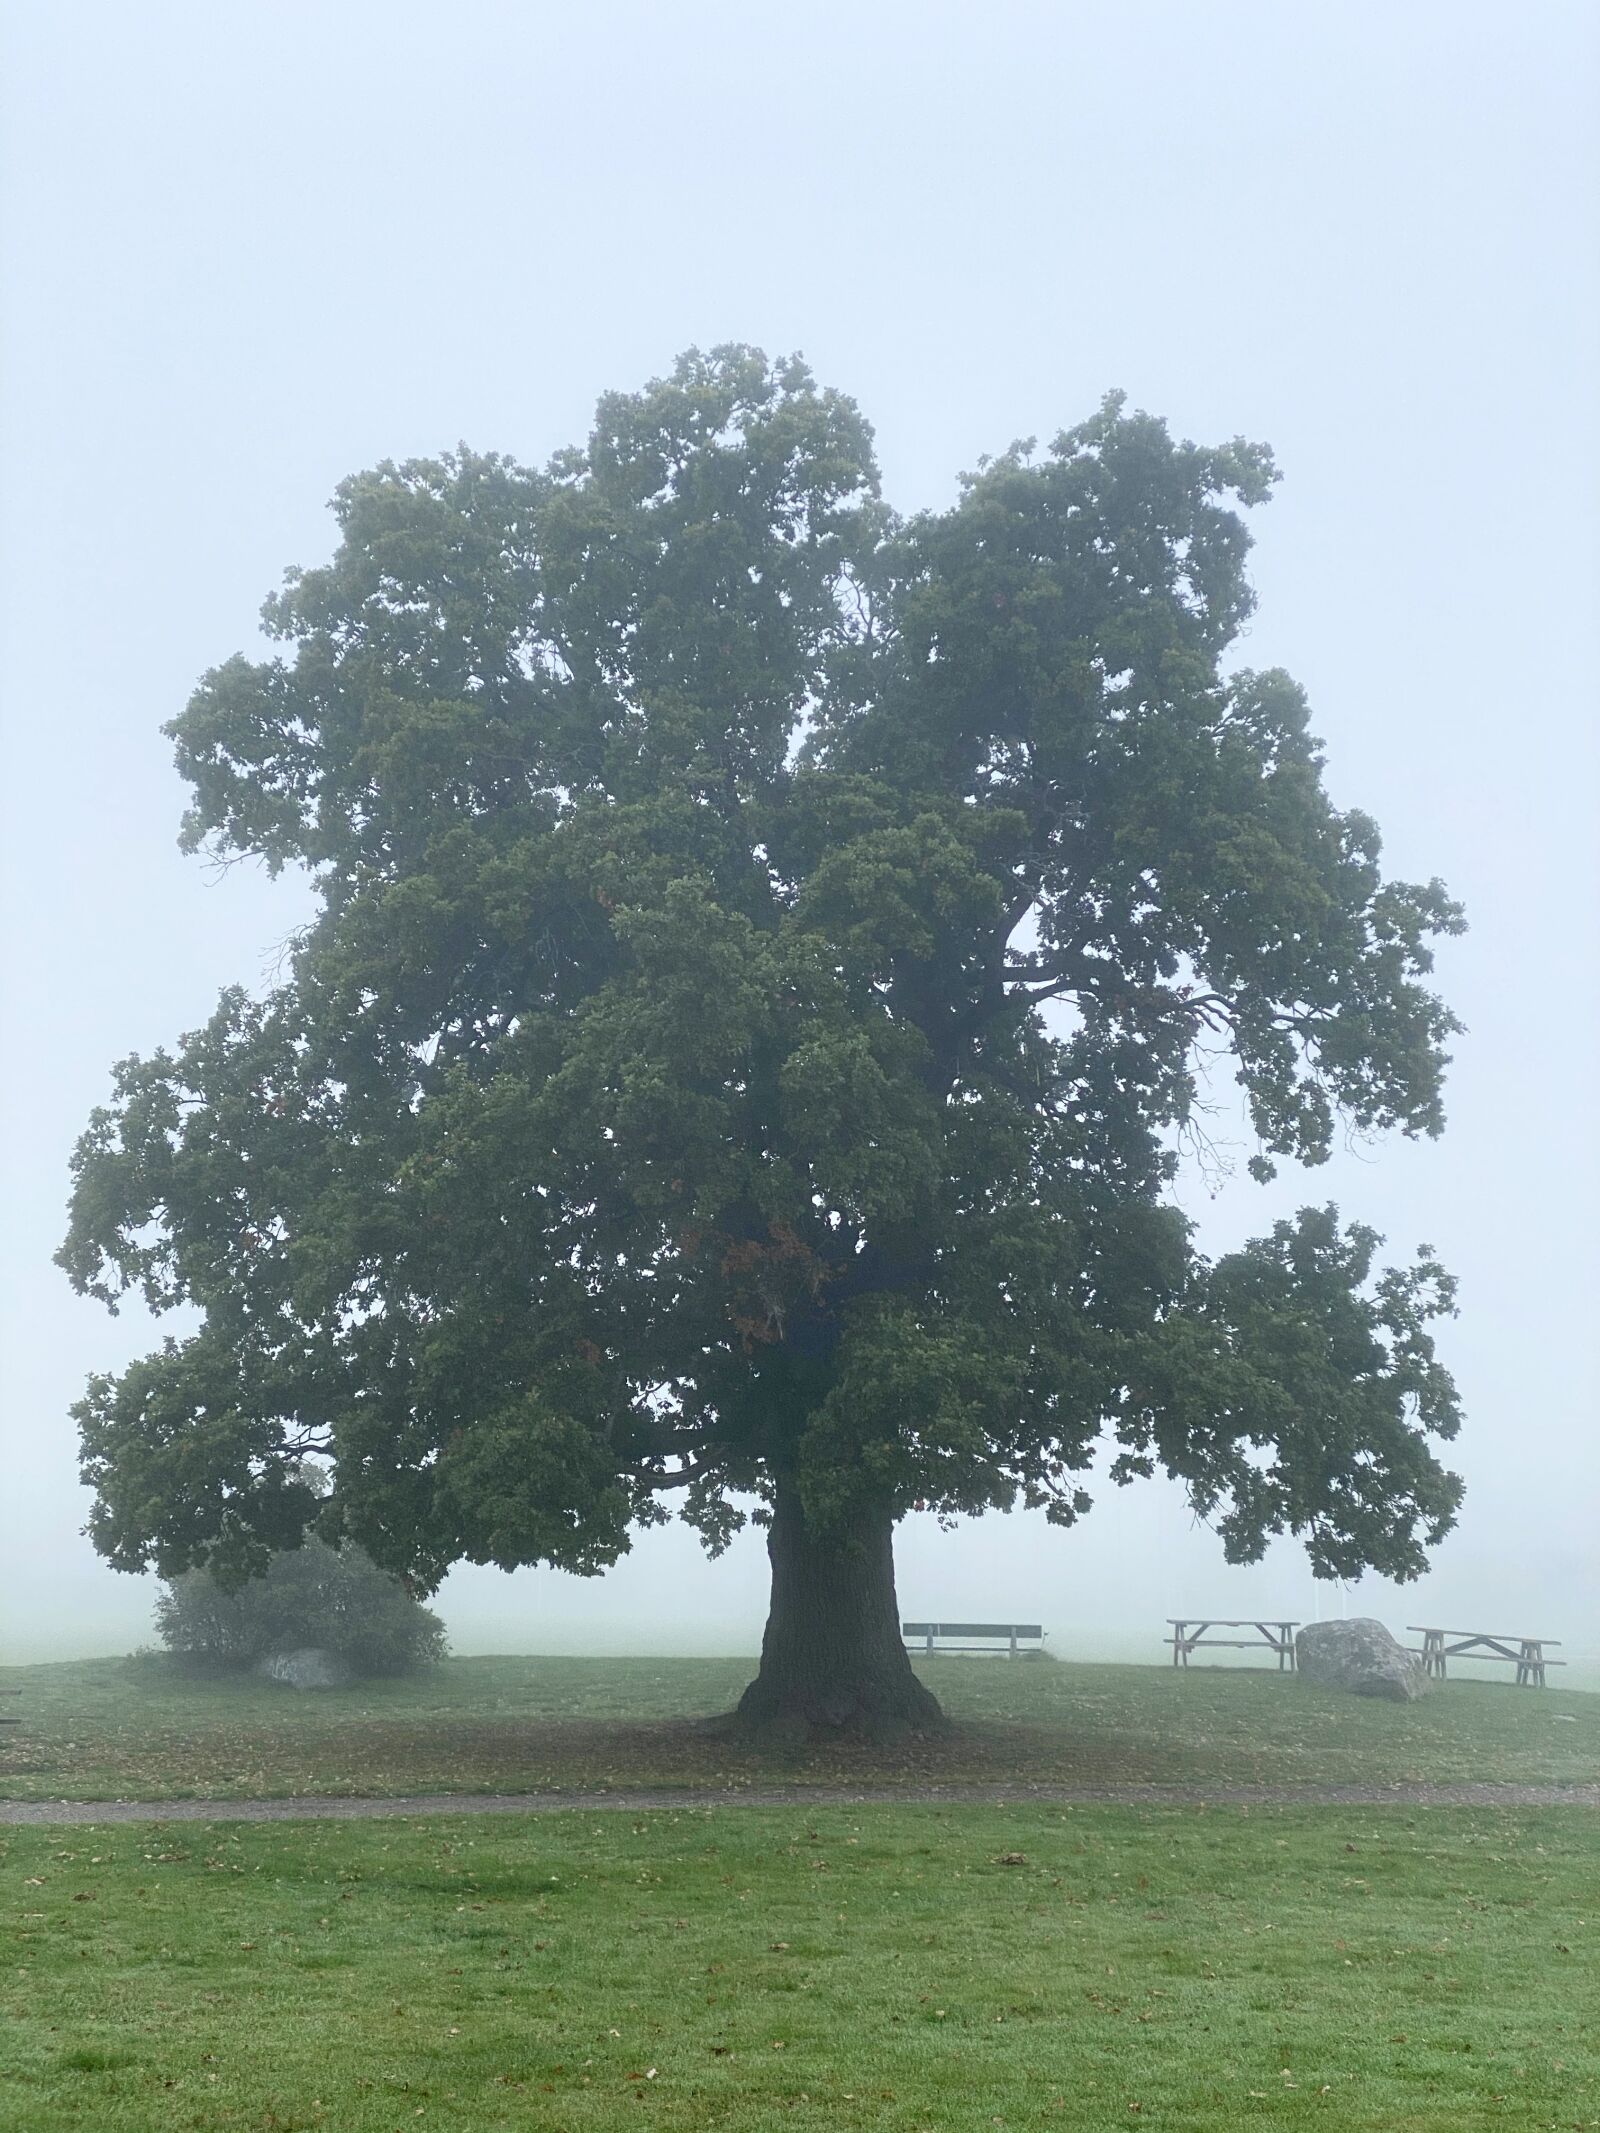 Apple iPhone 11 Pro sample photo. Oak, tree, autumn photography